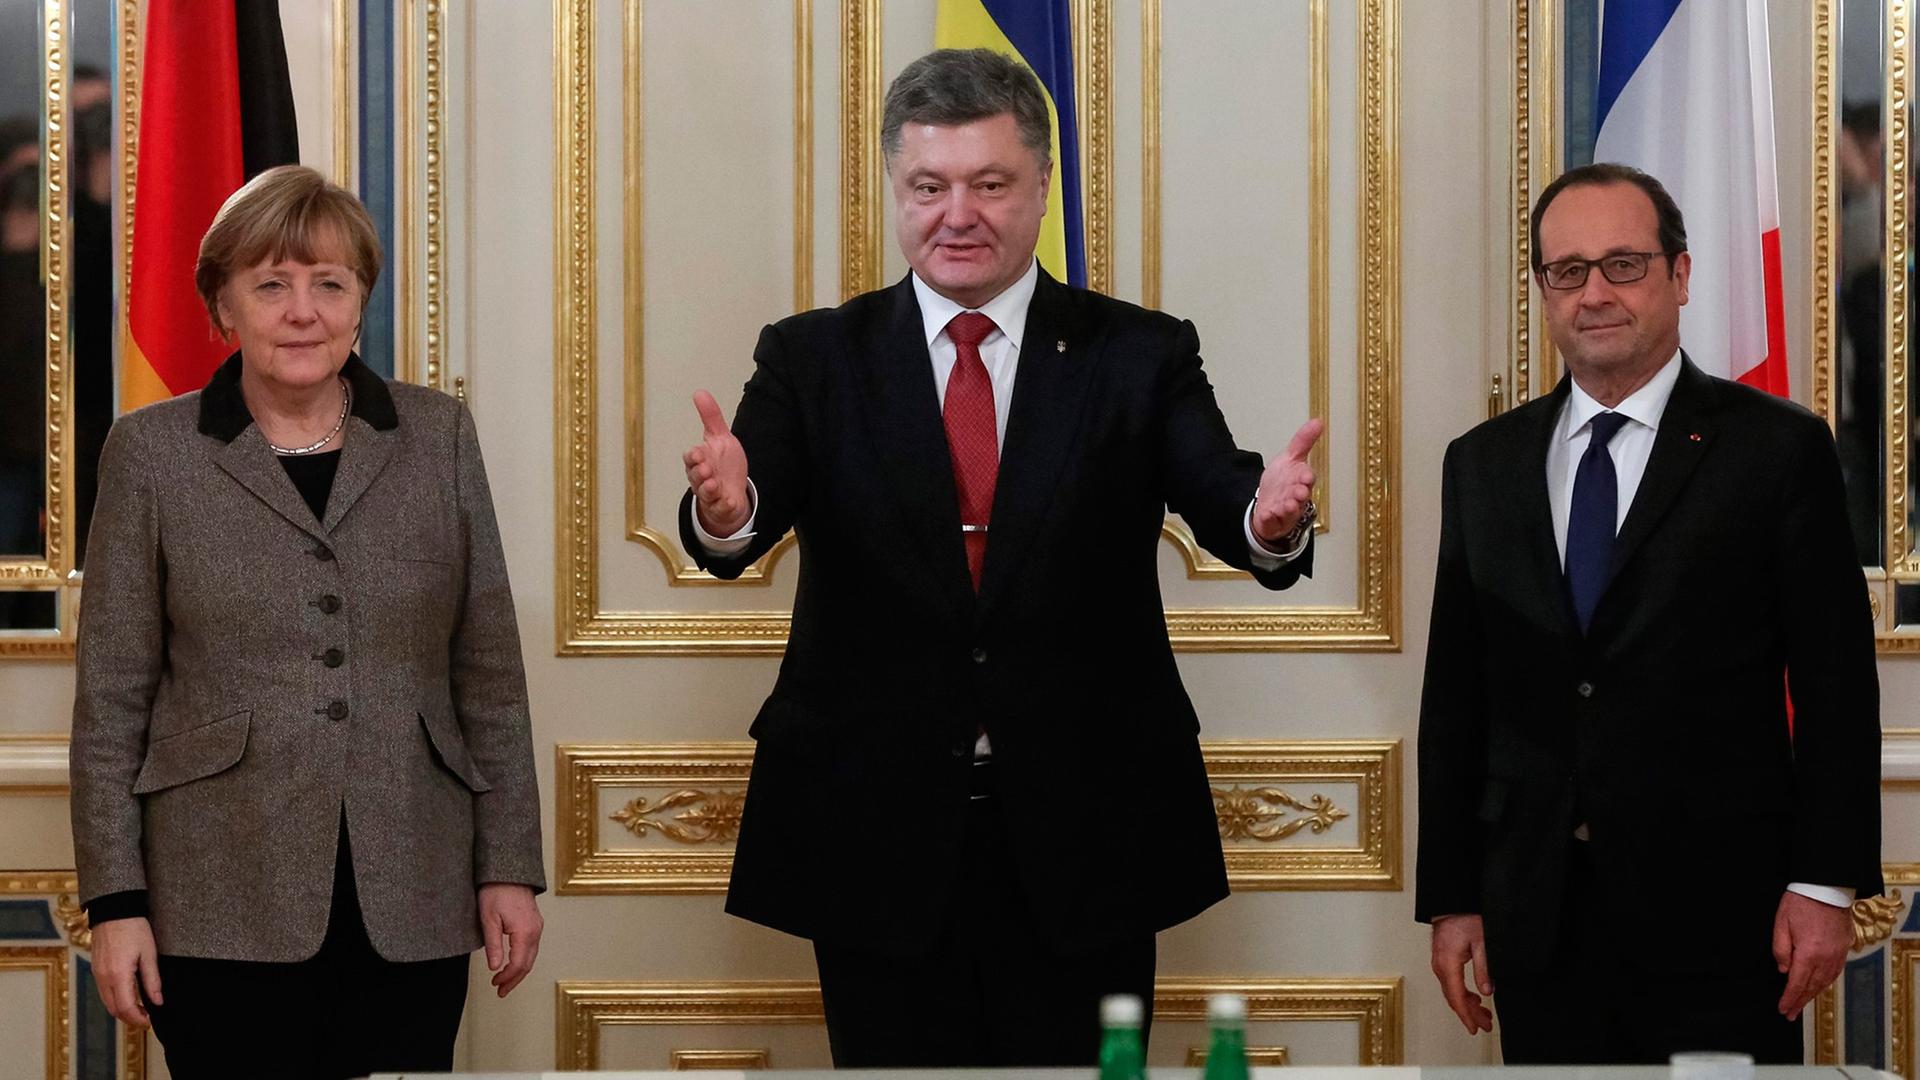 Bundeskanzlerin Angela Merkel (li.) und Frankreichs Präsident Francois Hollande (re.) stehen neben dem ukrainischen Staatsoberhaupt Petro Poroschenko, im Hintergrund sind die Flaggen der drei Länder zu sehen.